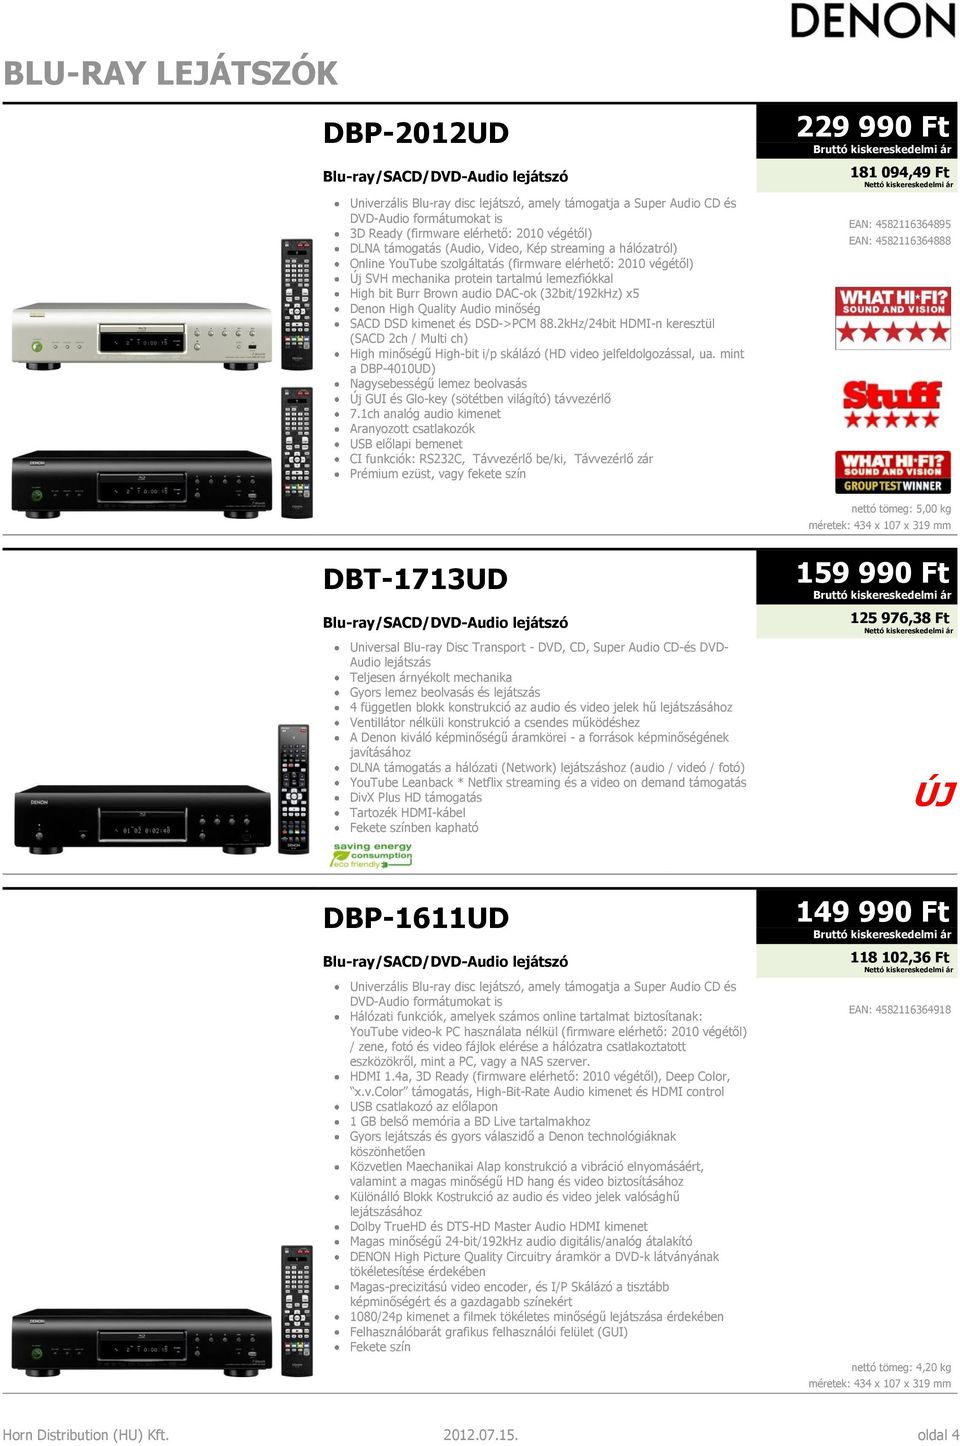 audio DAC-ok (32bit/192kHz) x5 Denon High Quality Audio minőség SACD DSD kimenet és DSD->PCM 88.